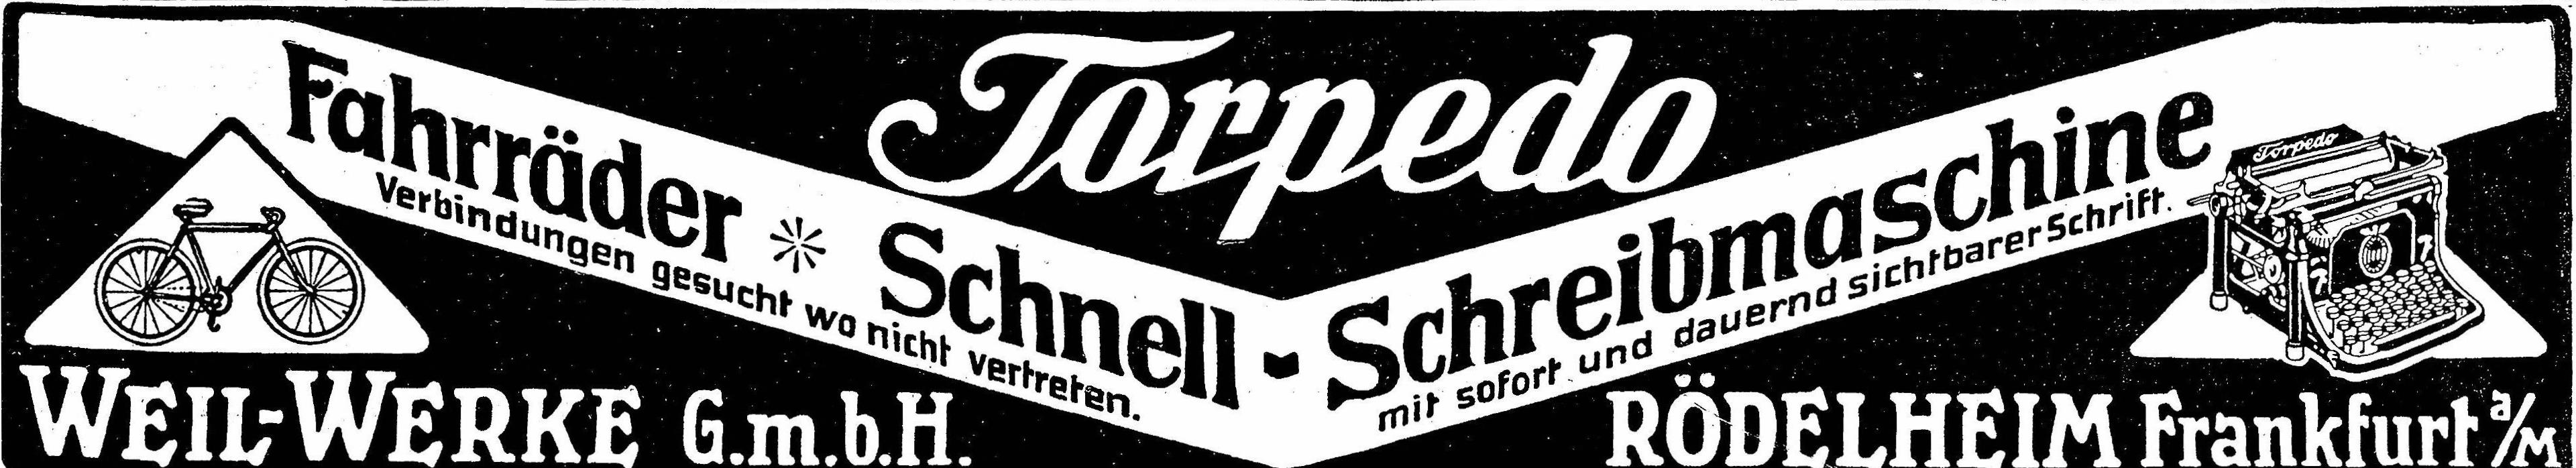 Torpedo 1910 172.jpg